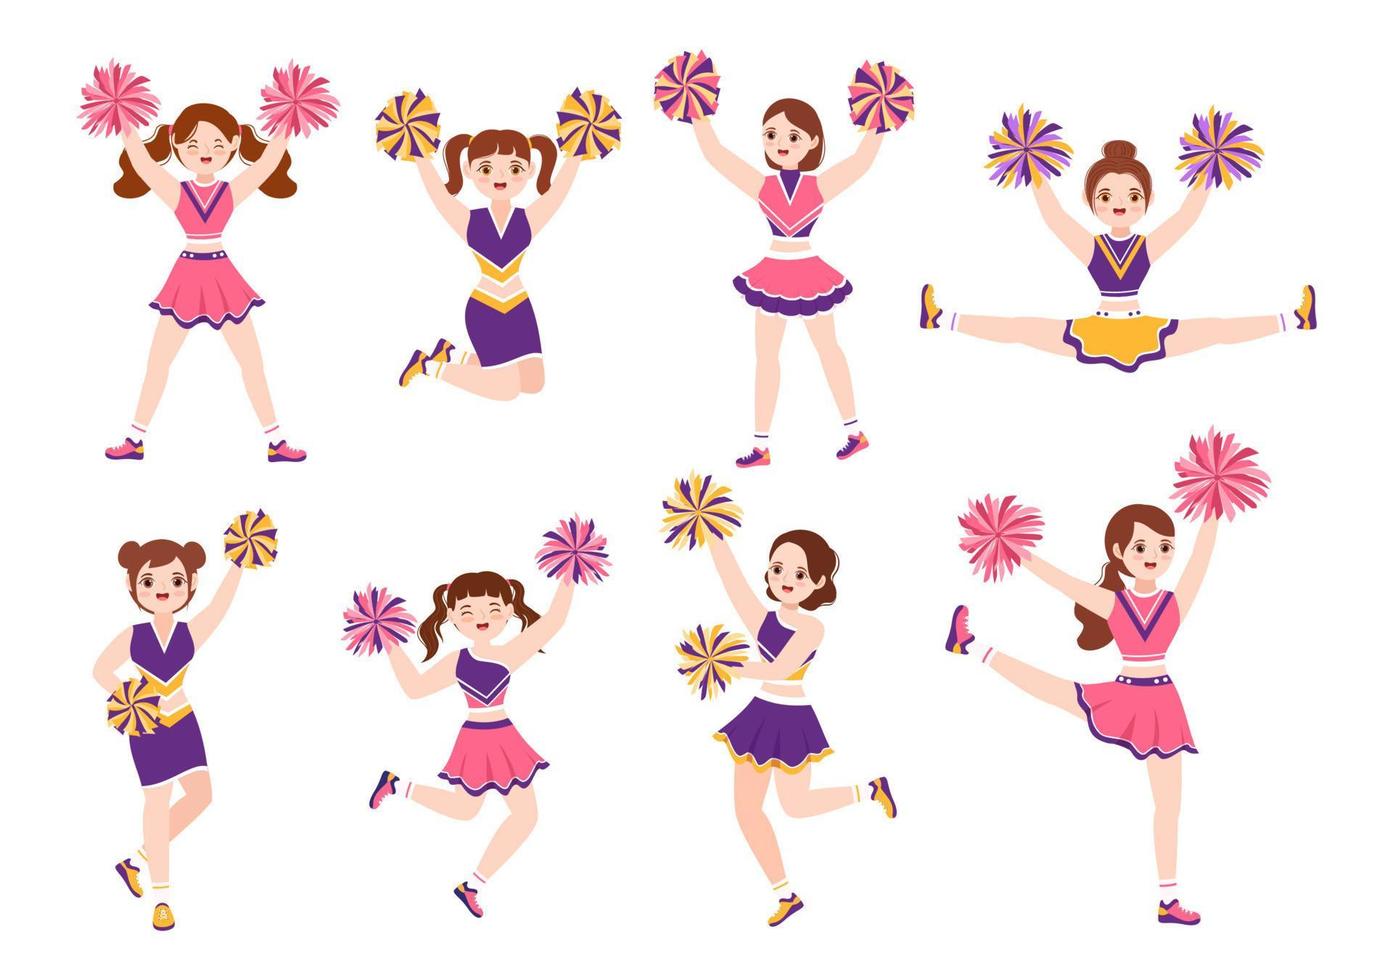 https://static.vecteezy.com/ti/vecteur-libre/p1/13752098-fille-de-pom-pom-girl-avec-des-pompons-de-danse-et-de-saut-pour-soutenir-le-sport-d-equipe-pendant-la-competition-sur-l-illustration-de-modeles-dessines-a-la-main-de-dessin-anime-plat-vectoriel.jpg